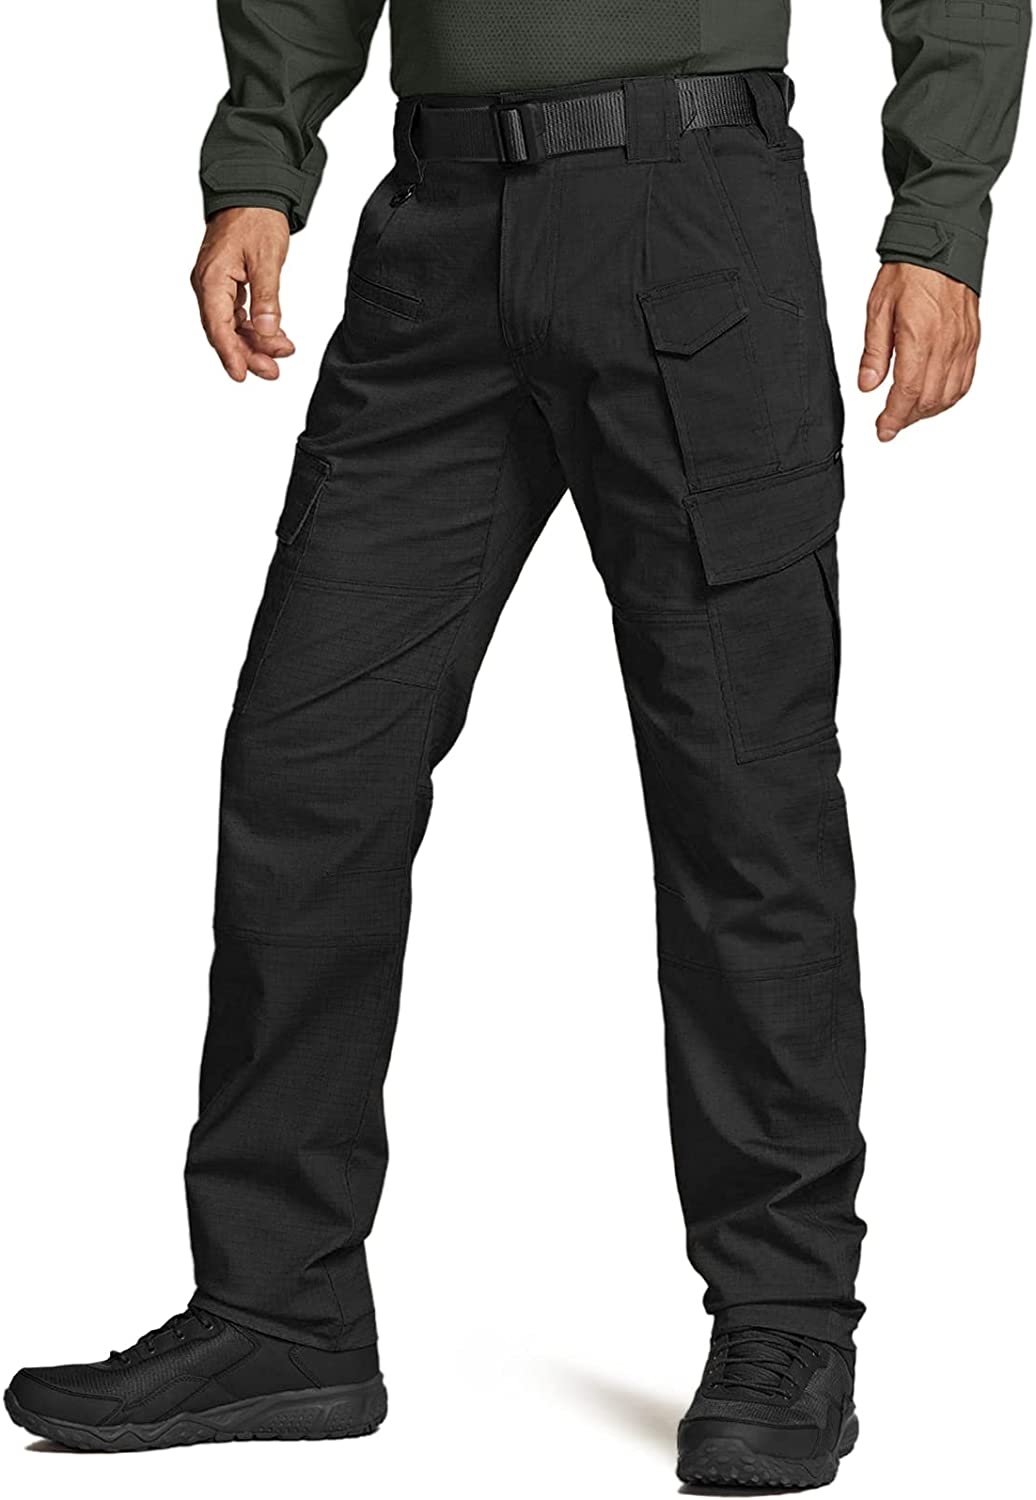 Wholesale CQR Men's Flex Ripstop Tactical Pants, Water Resistant ...